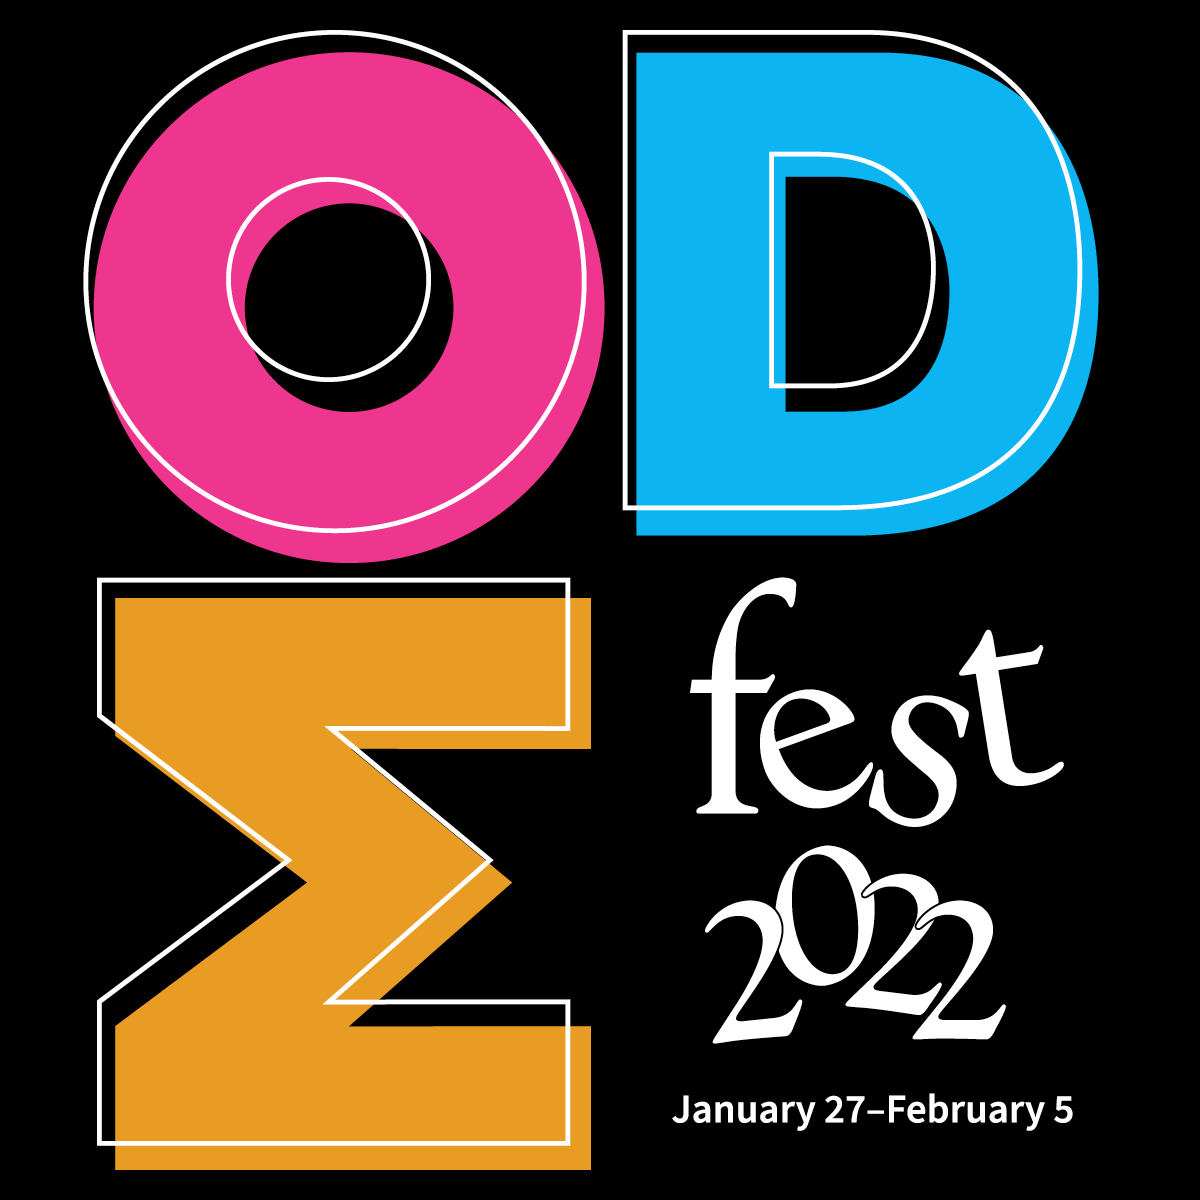 Modfest 2022 - January 27 - February 5